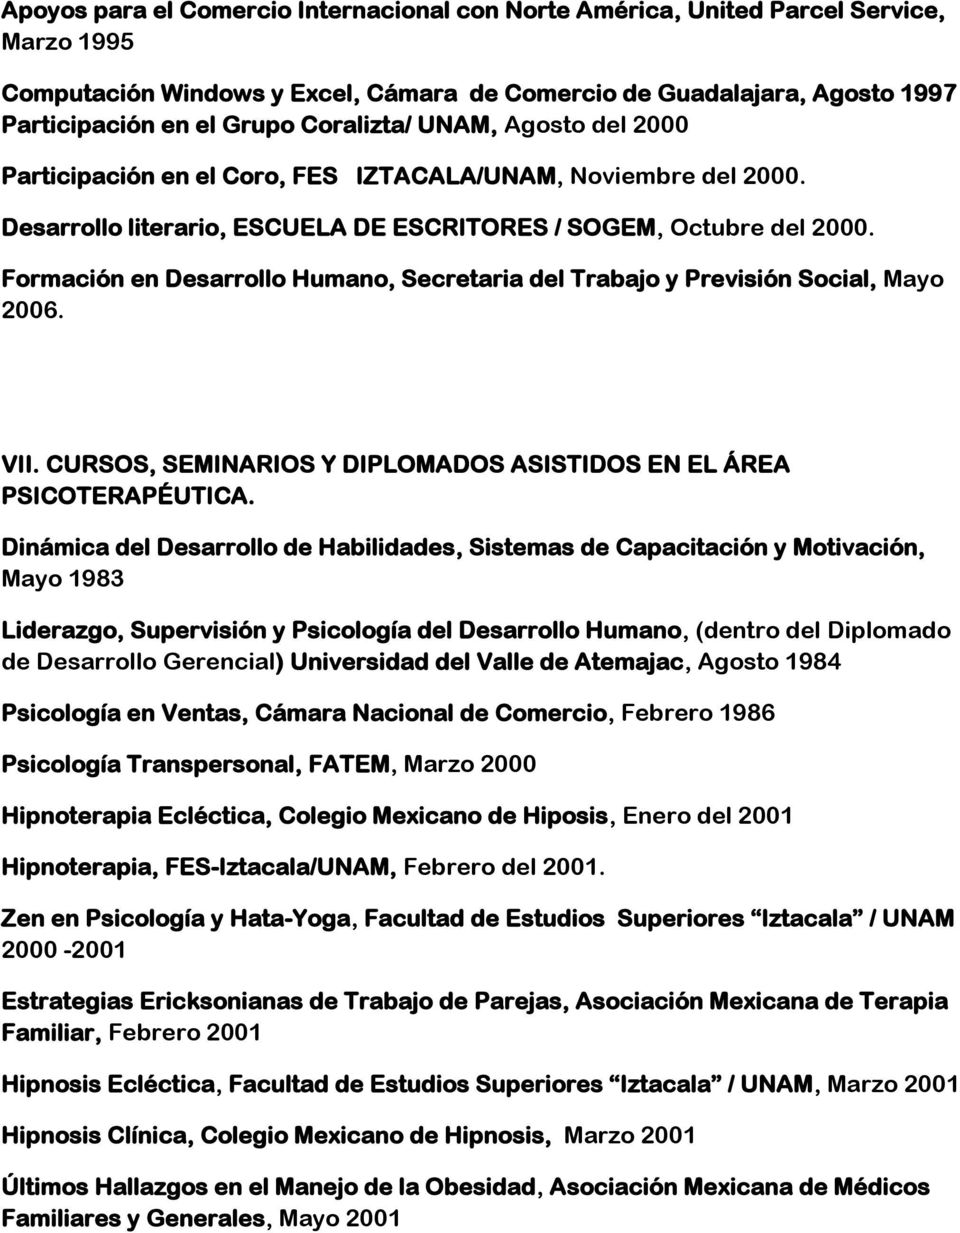 Formación en Desarrollo Humano, Secretaria del Trabajo y Previsión Social, Mayo 2006. VII. CURSOS, SEMINARIOS Y DIPLOMADOS ASISTIDOS EN EL ÁREA PSICOTERAPÉUTICA.